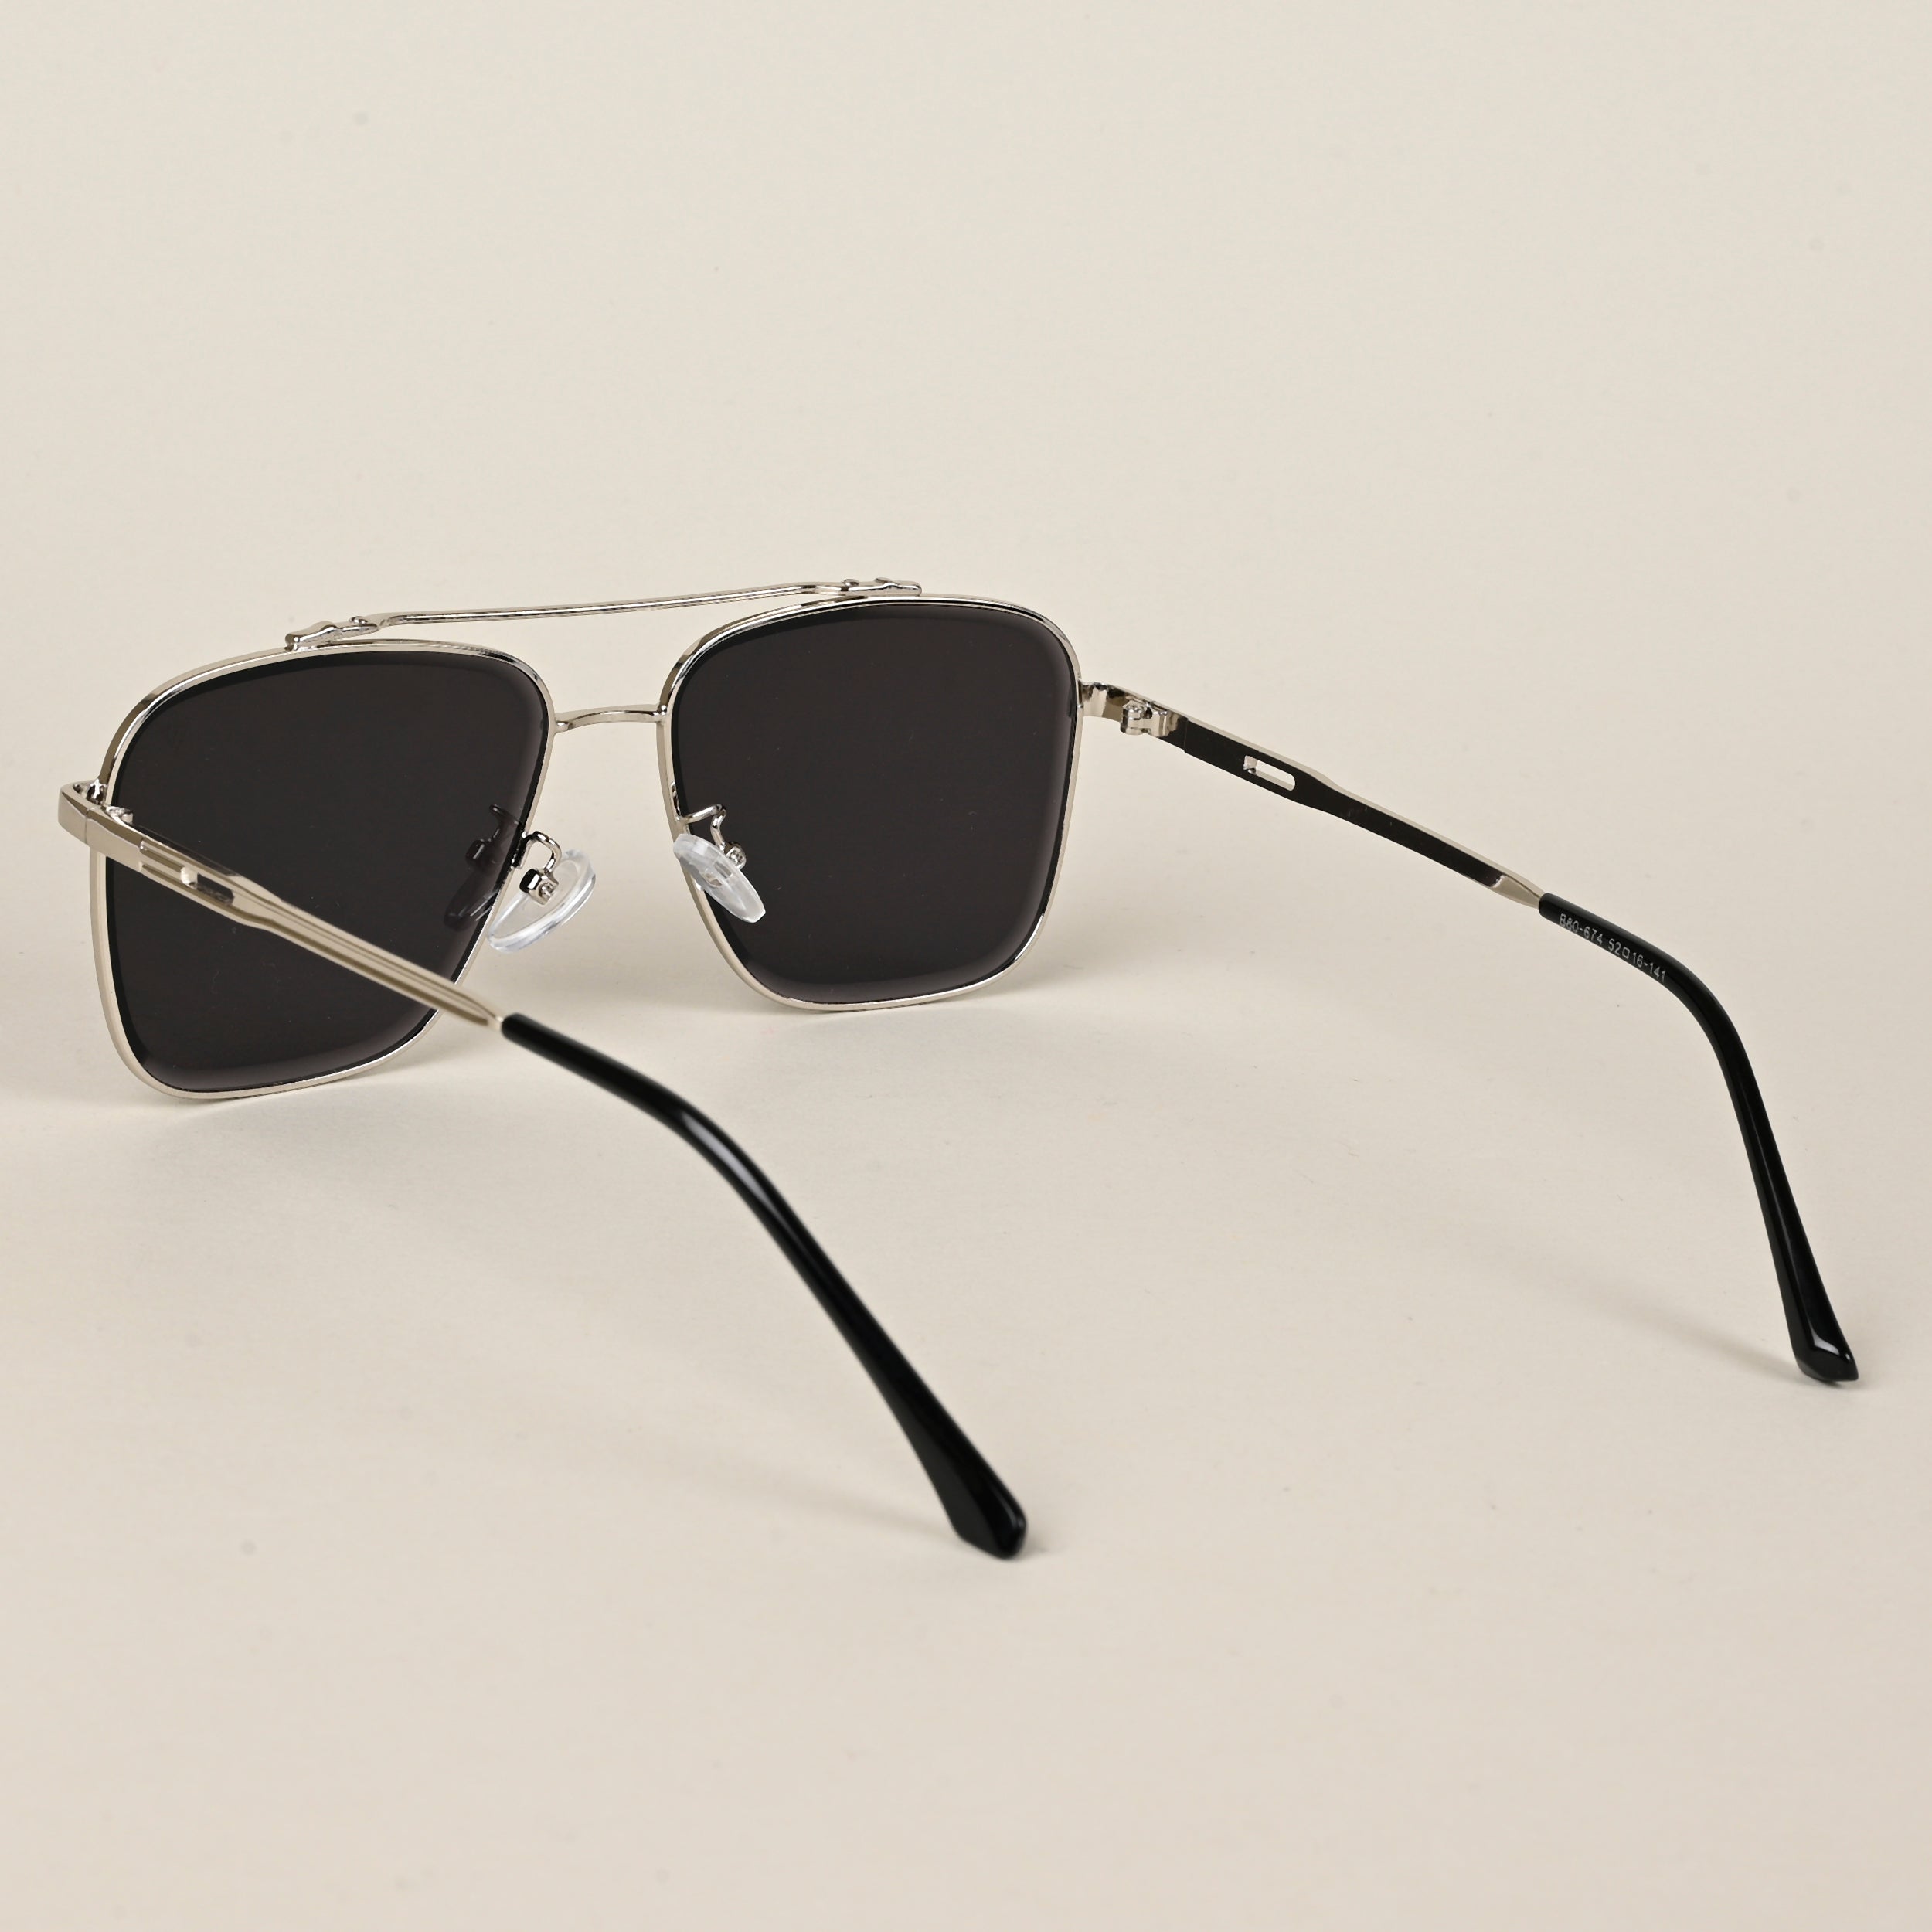 Voyage Aviator Sunglasses for Men & Women (Black Lens | Silver Frame  - MG5195)